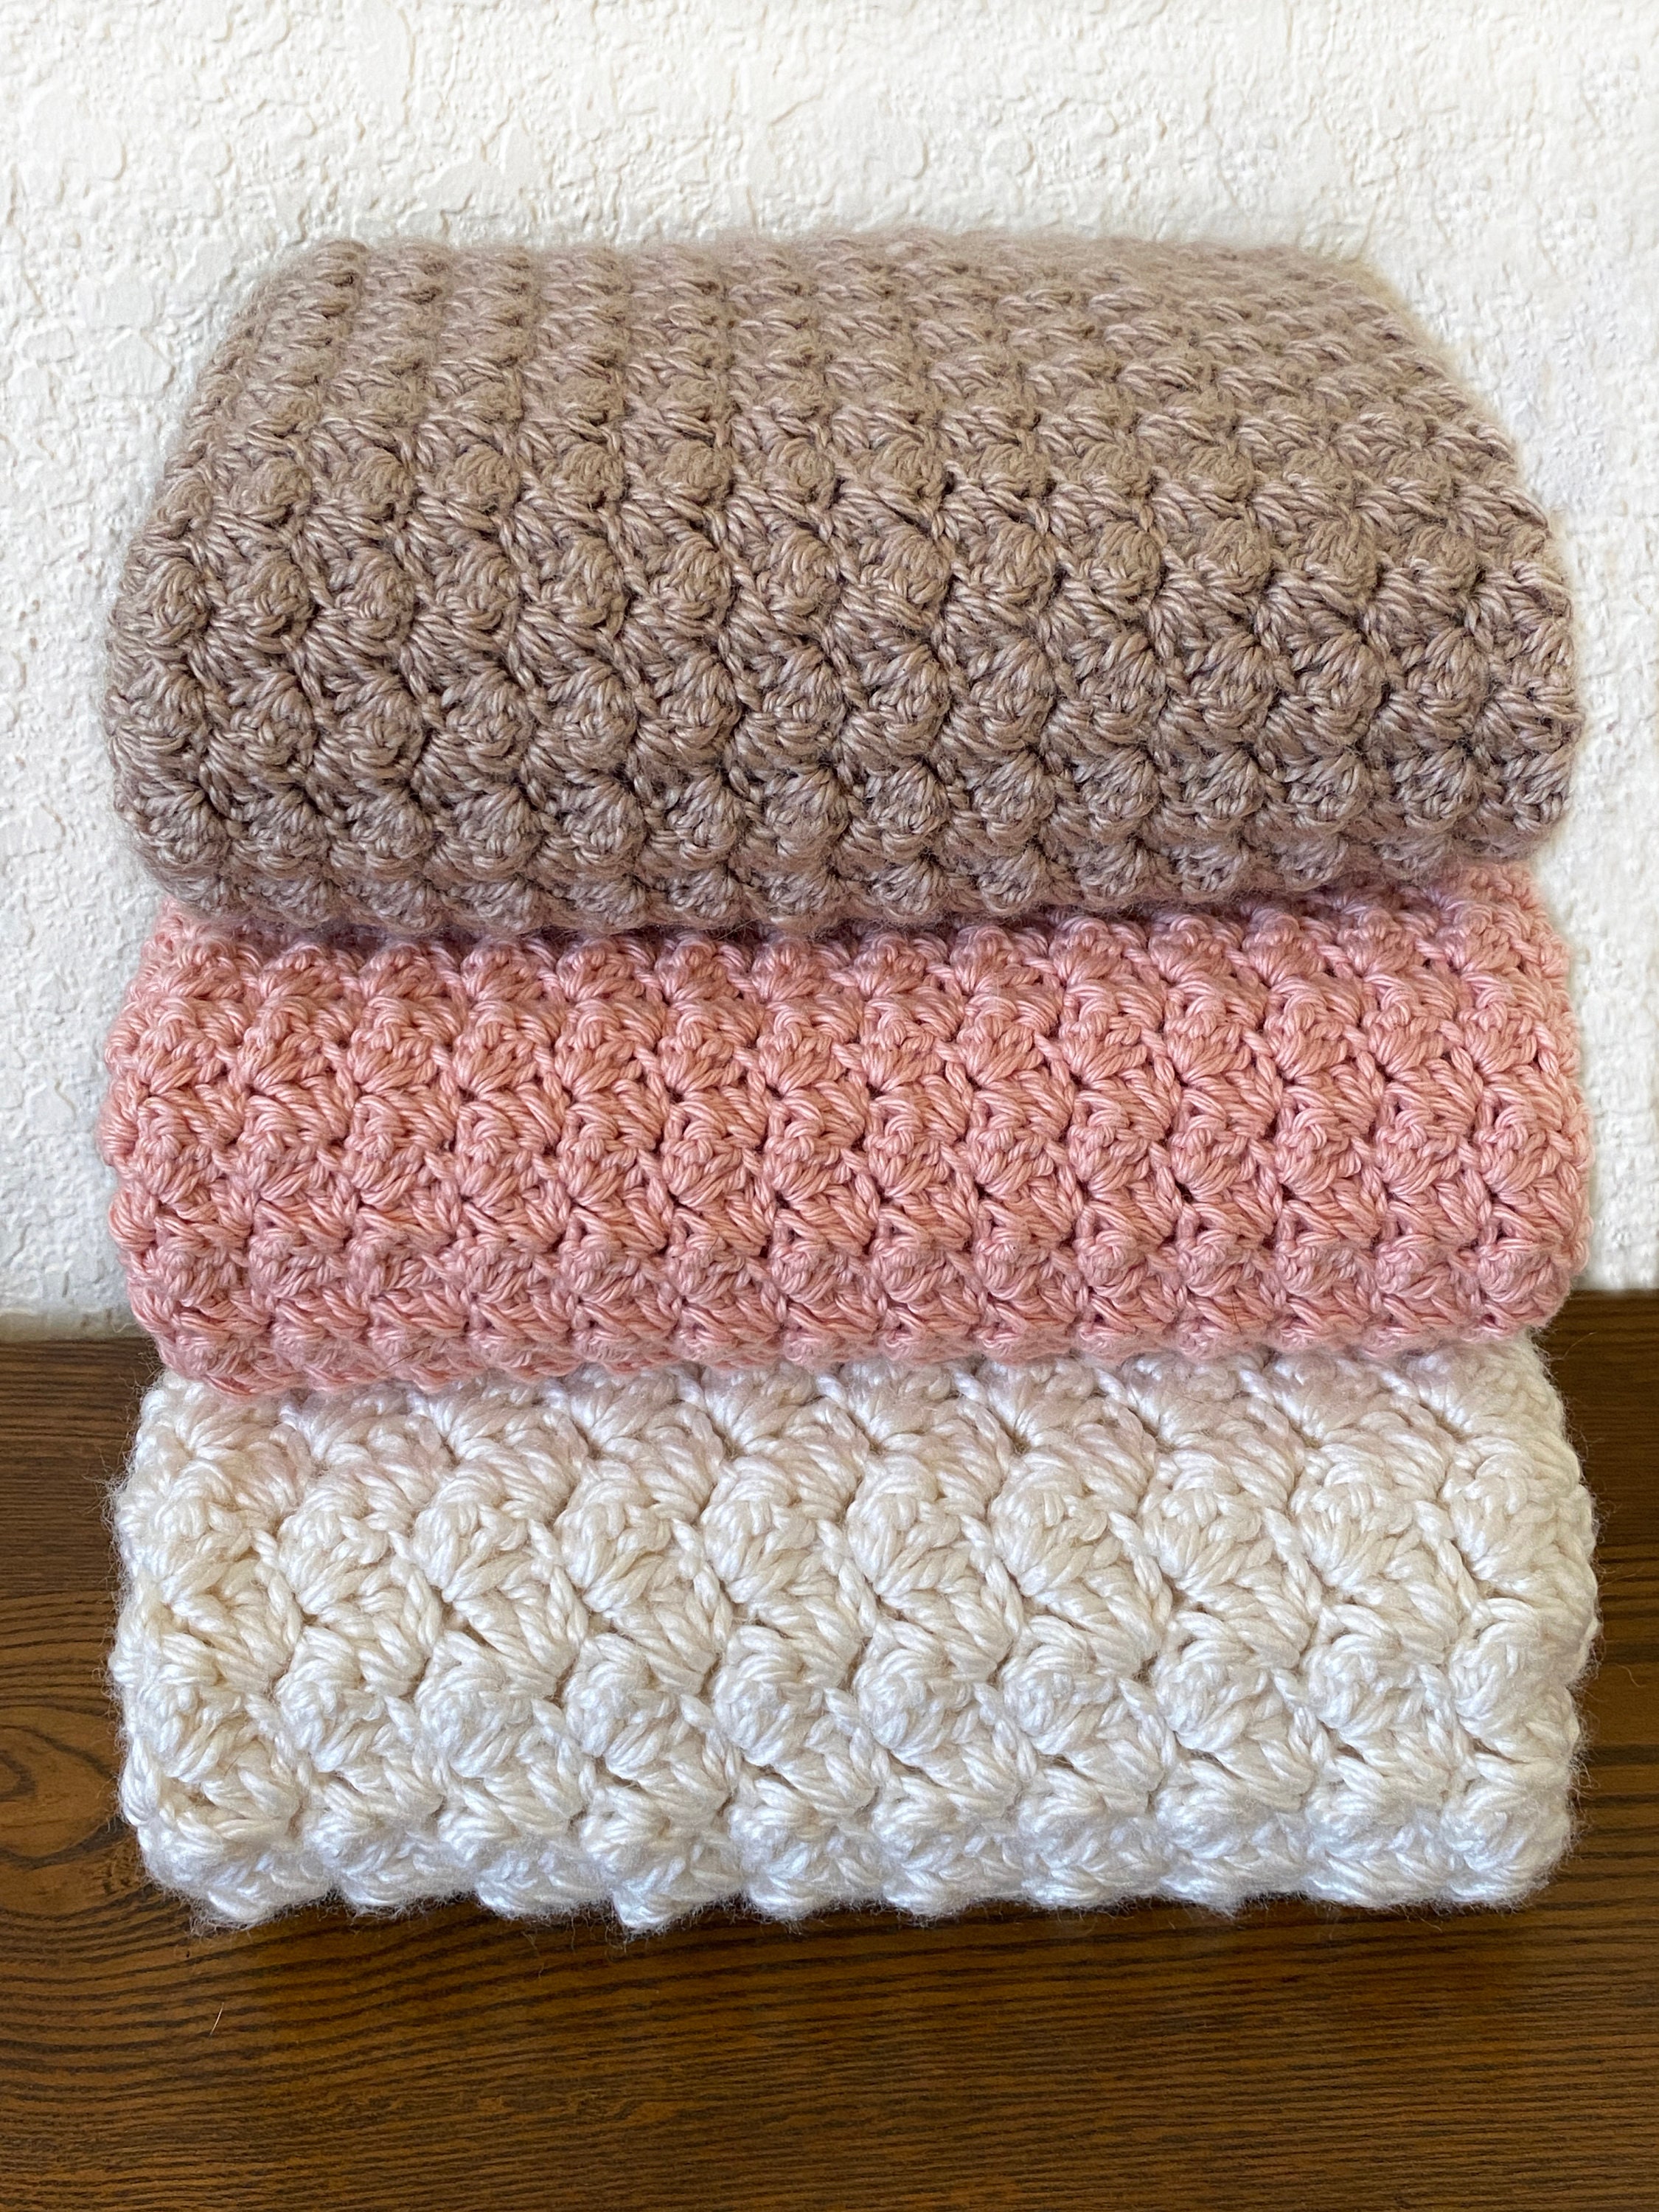 Crochet blanket pattern - free pattern! Colorful, beginner friendly,  beautiful!